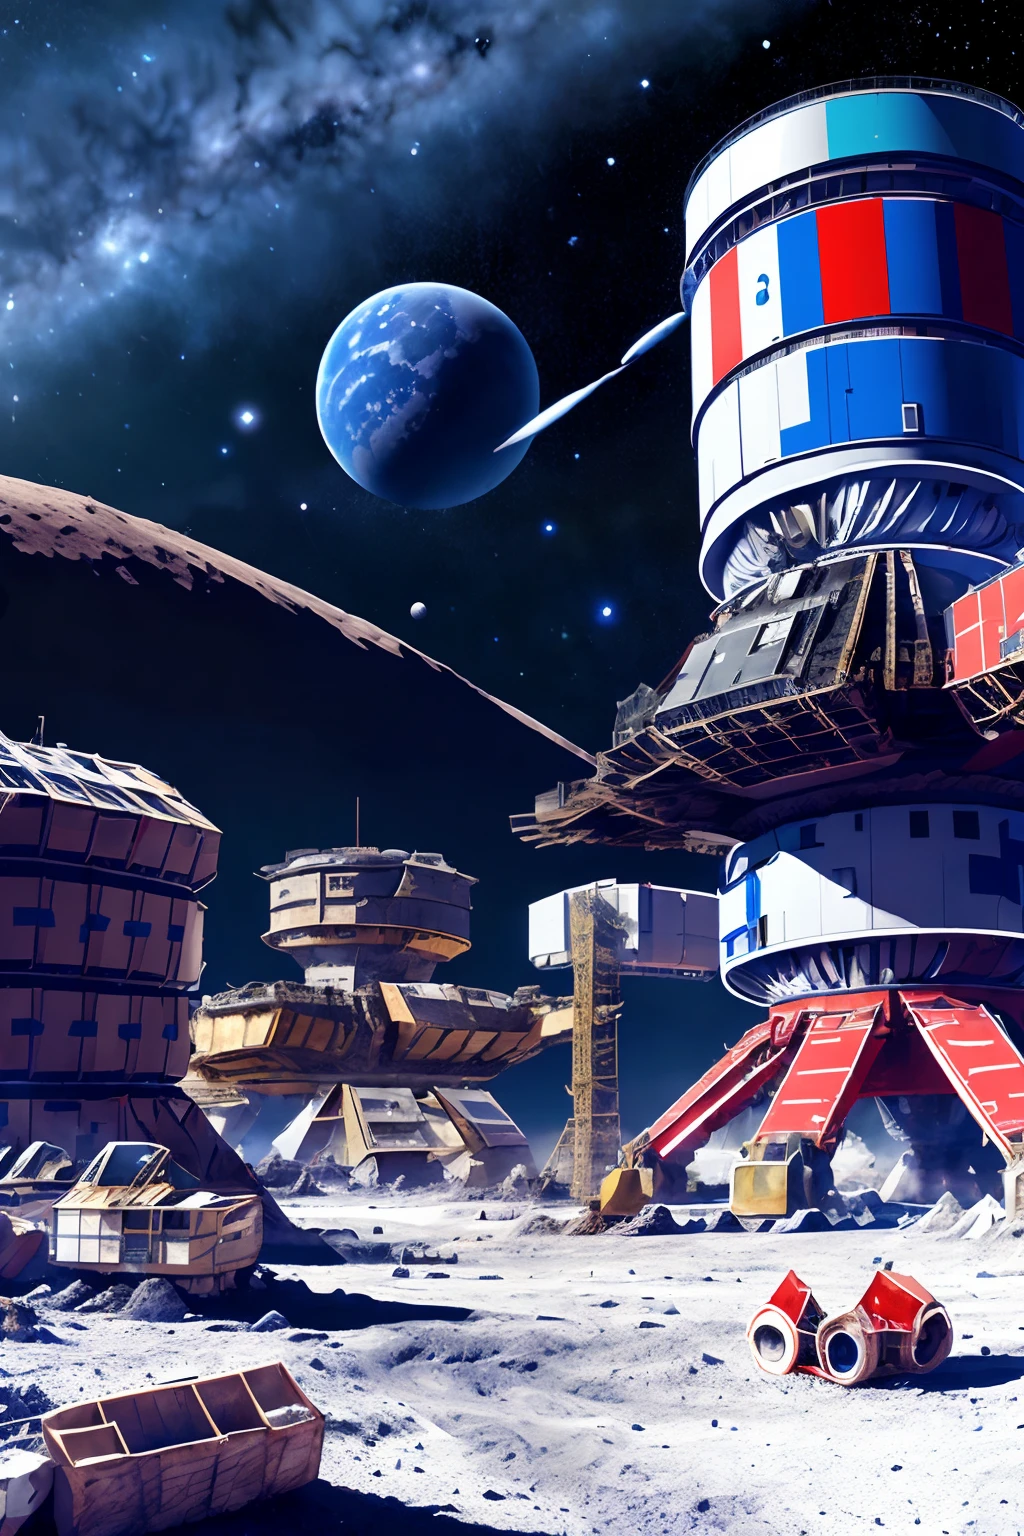 人工智能建造场, 月球基地, 背景-恒星和行星, 俄罗斯国旗, 漆成白色, 蓝色的, 红色;